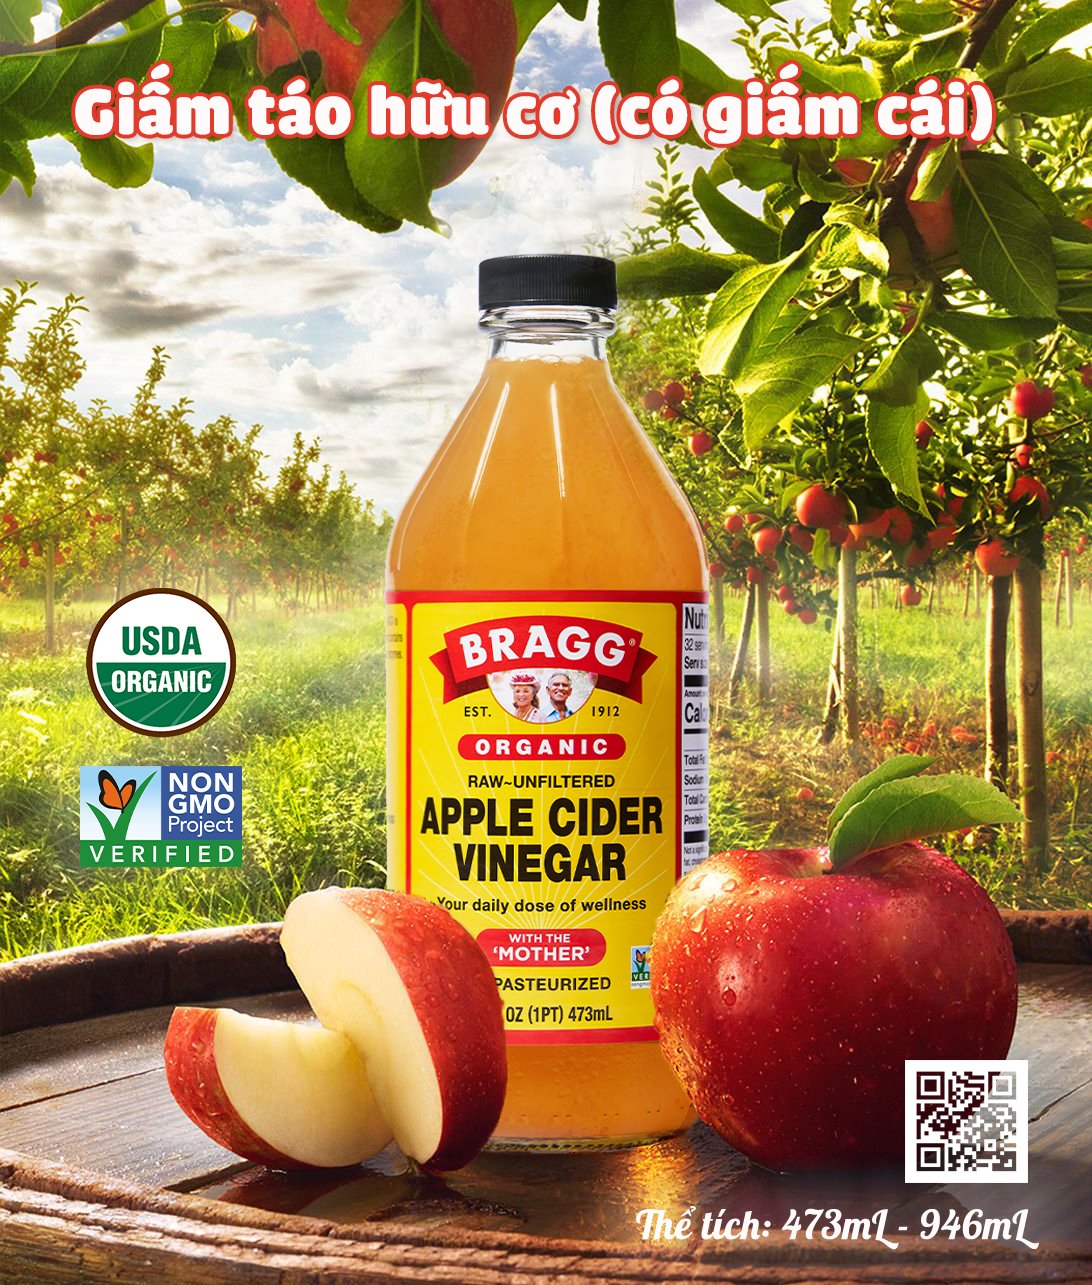 Giấm táo hữu cơ Bragg có giấm cái - Organic Apple Cider Vinegar with mother